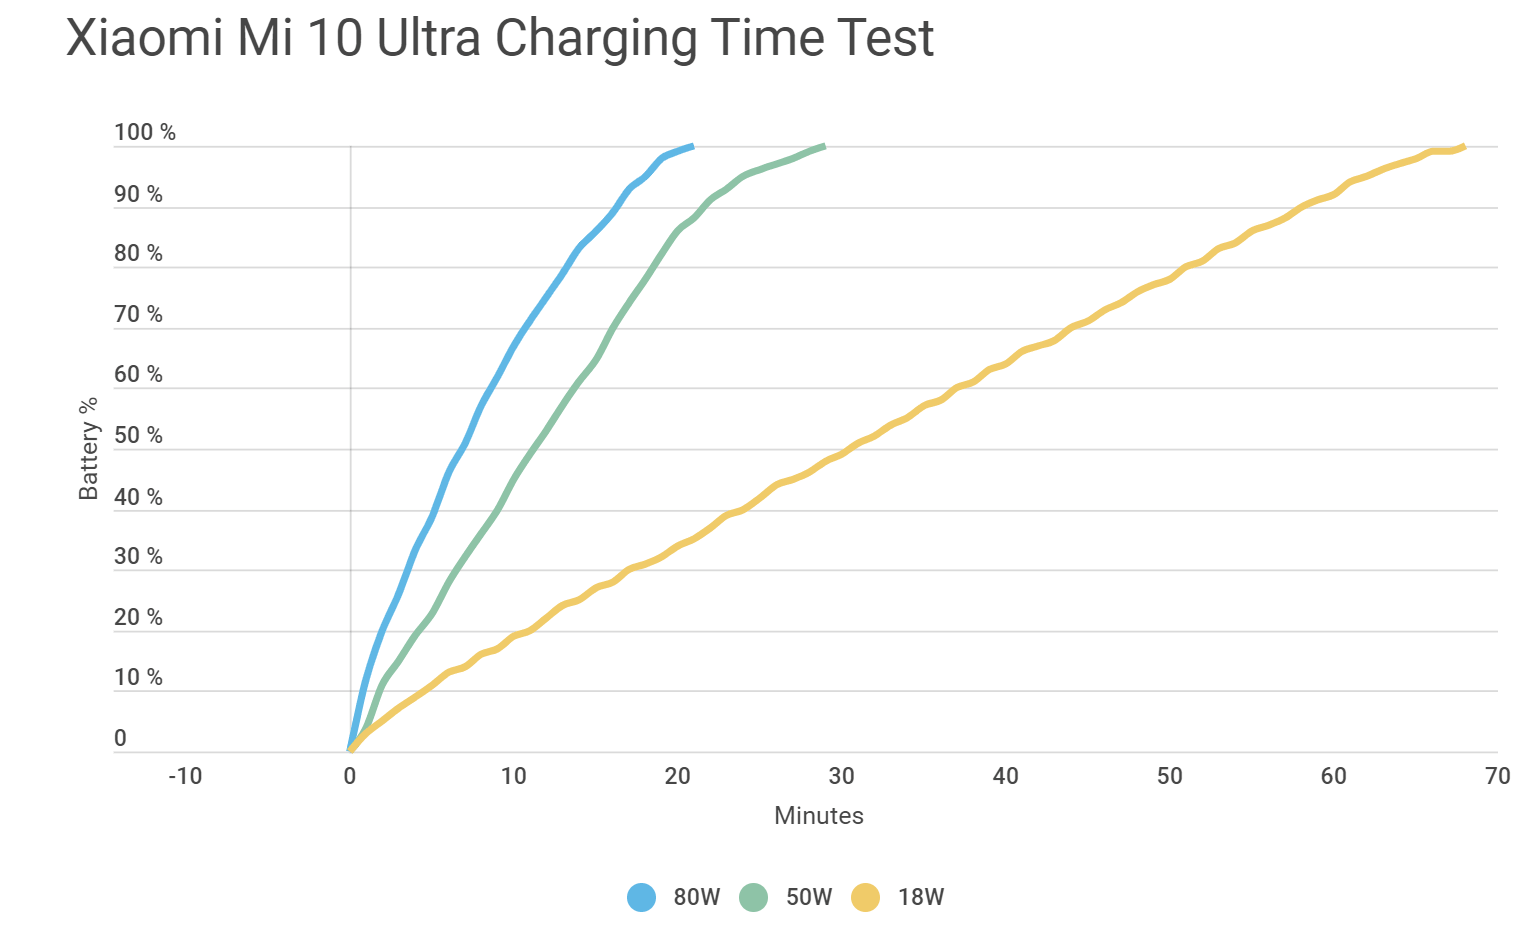 120-ваттное зарядное Xiaomi на деле выдает лишь 80 Ватт заряда